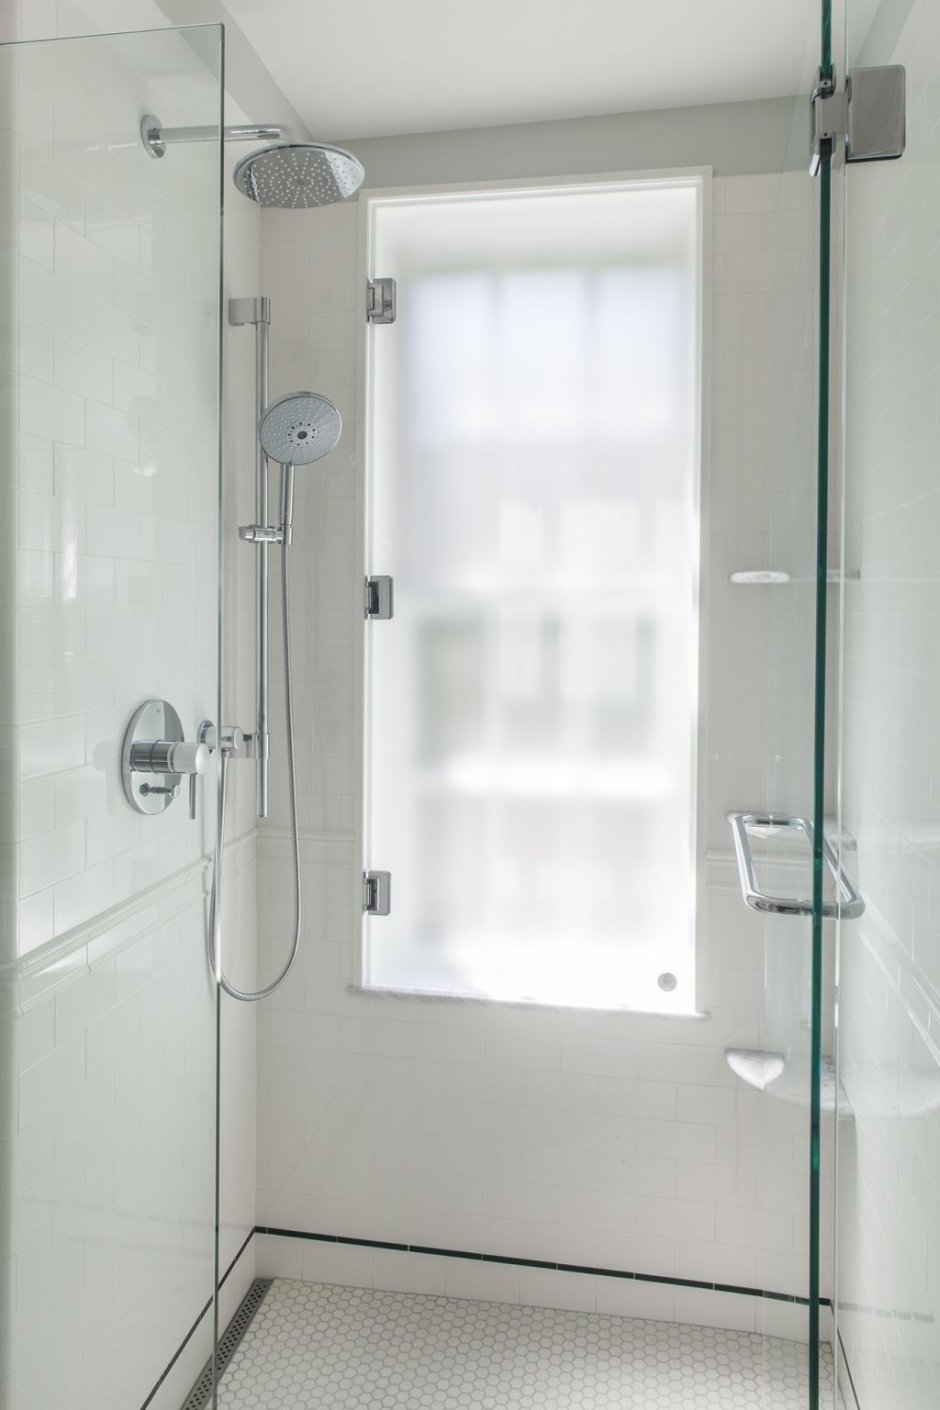 Shower house. Душевая с окном. Ванная с душем. Окно в душевой кабине.